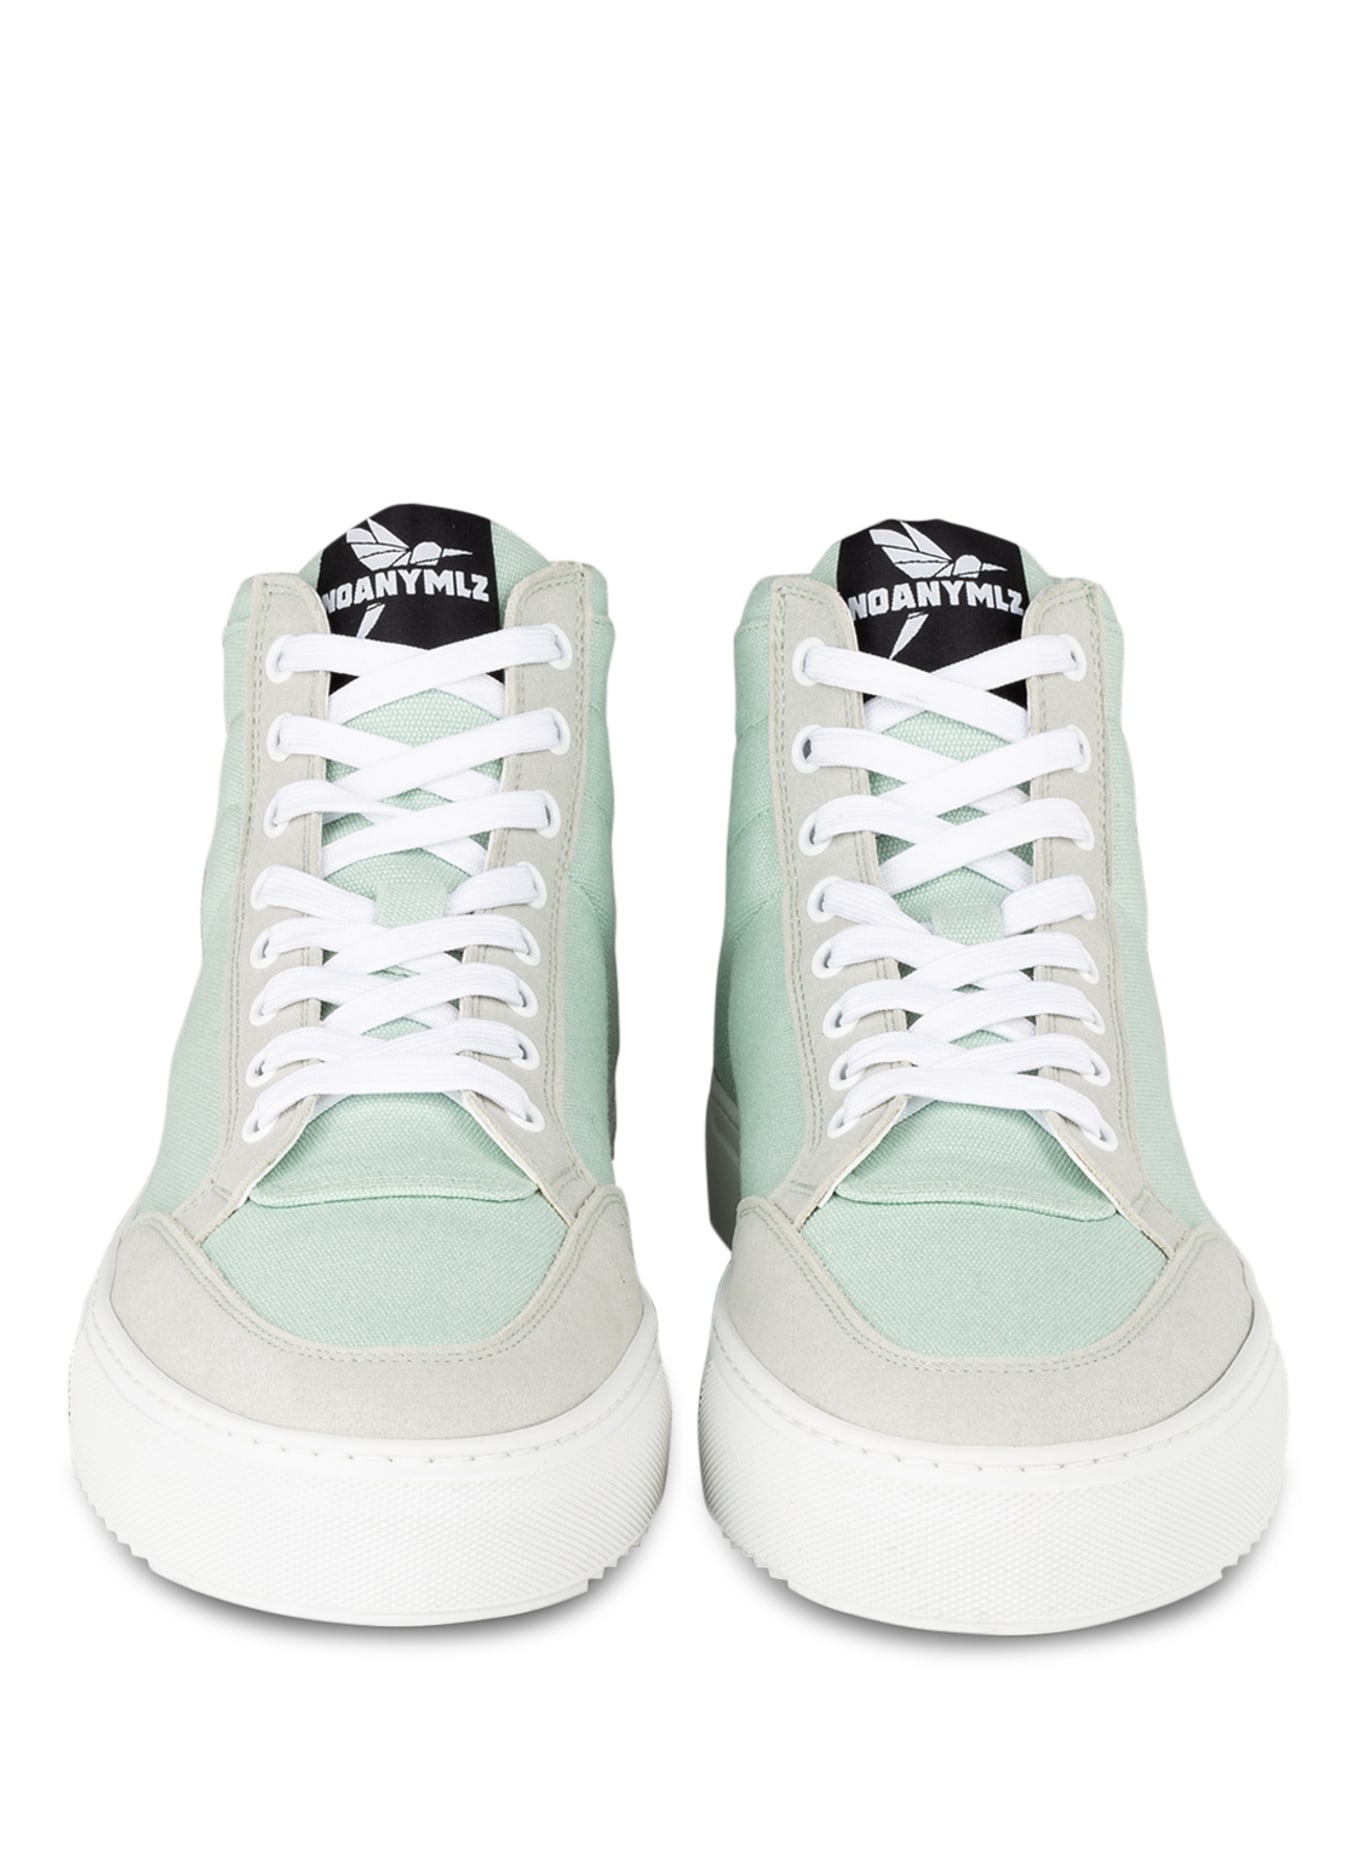 NOANYMLZ Hightop-Sneaker LEVEL G4, Farbe: MINT (Bild 3)